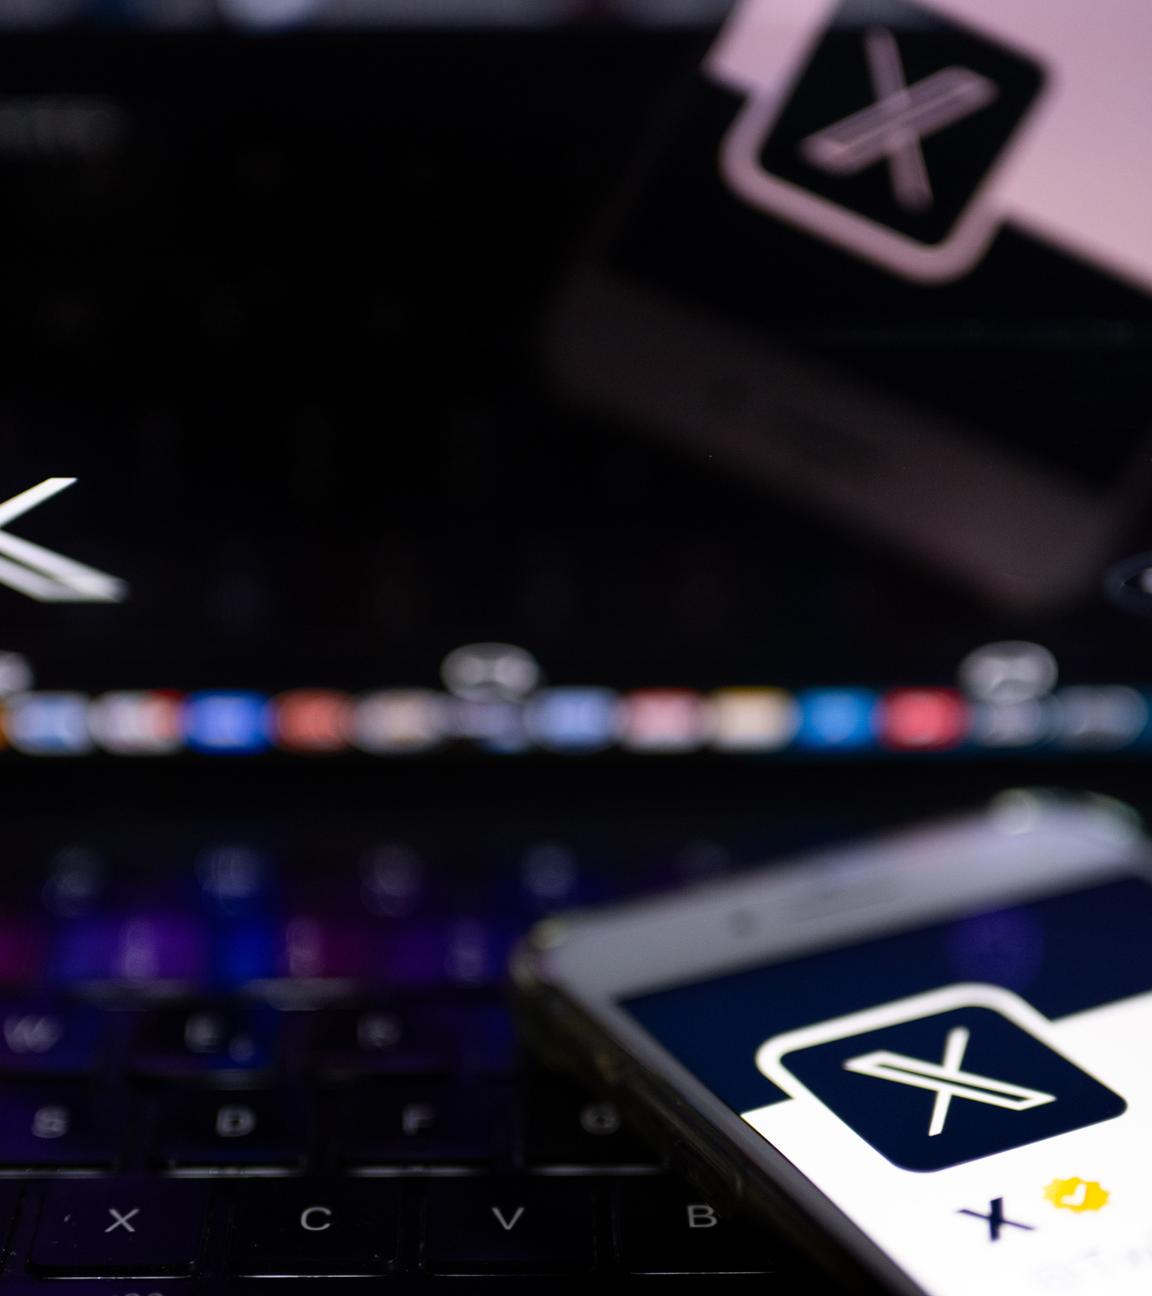  Auf dem offiziellen Profil der Plattform X auf dem Bildschirm eines Smartphones und auf dem Display eines Laptops ist der weiße Buchstabe X auf schwarzem Hintergrund zu sehen. 